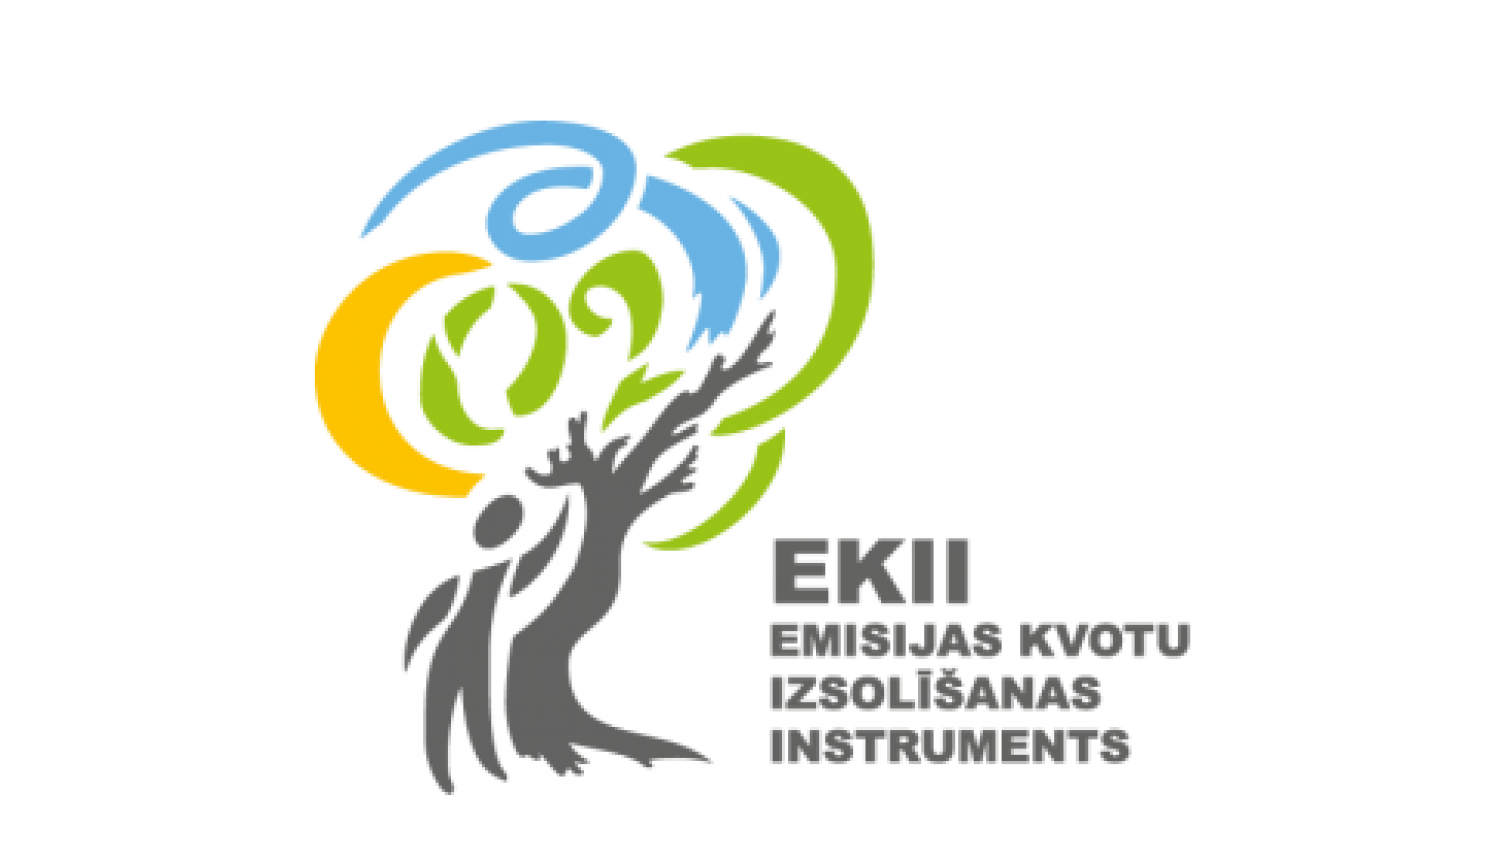 ekii logo